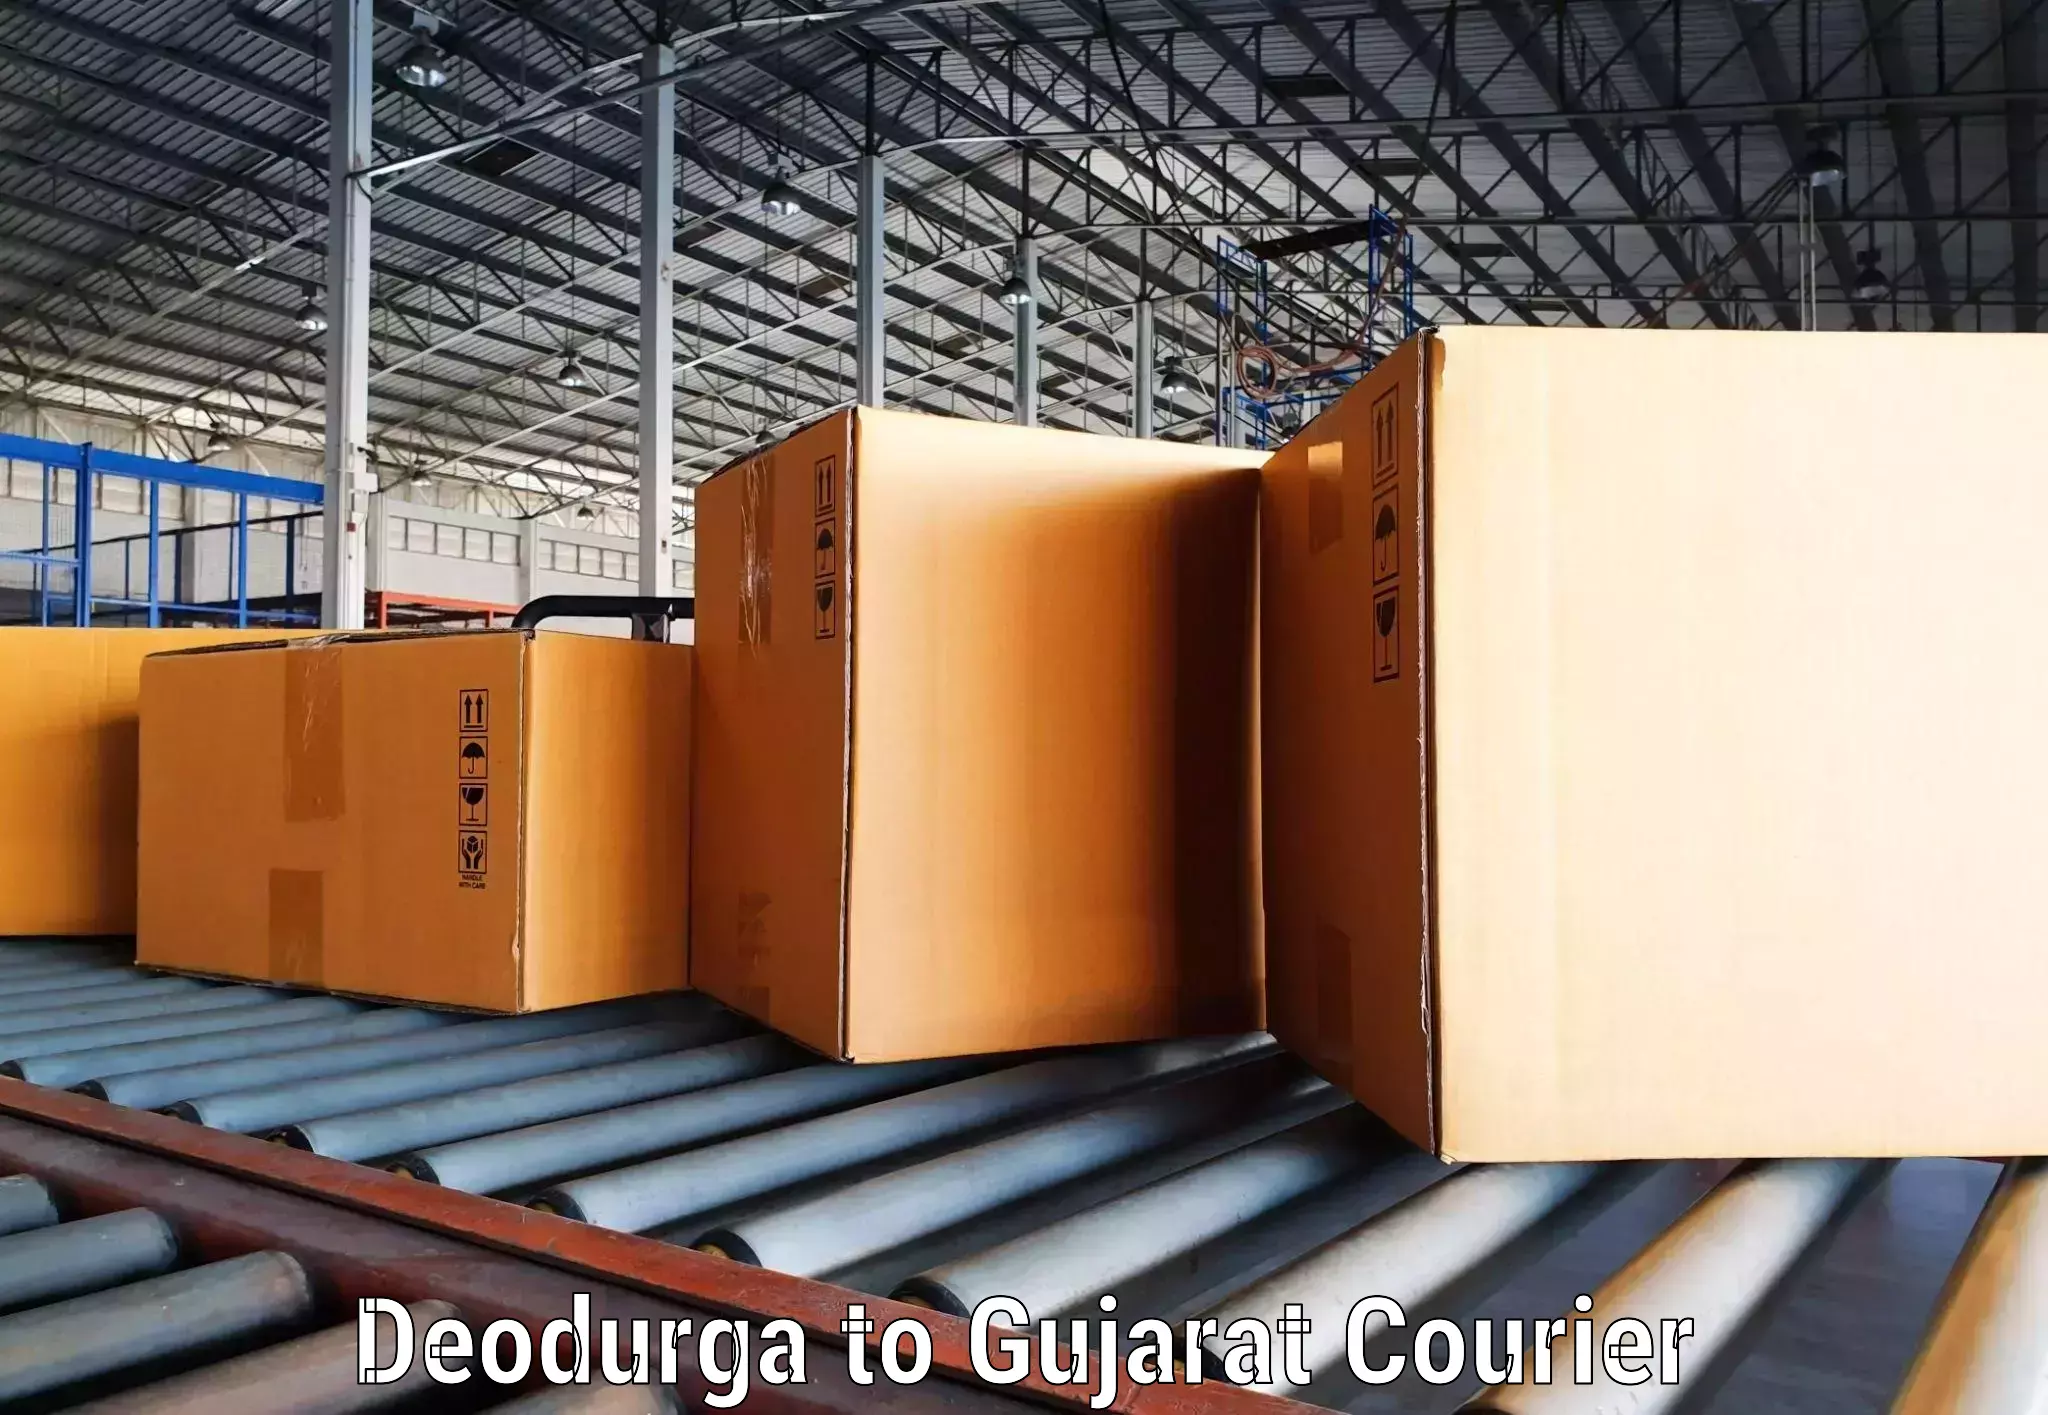 24-hour courier service Deodurga to Bhabhar